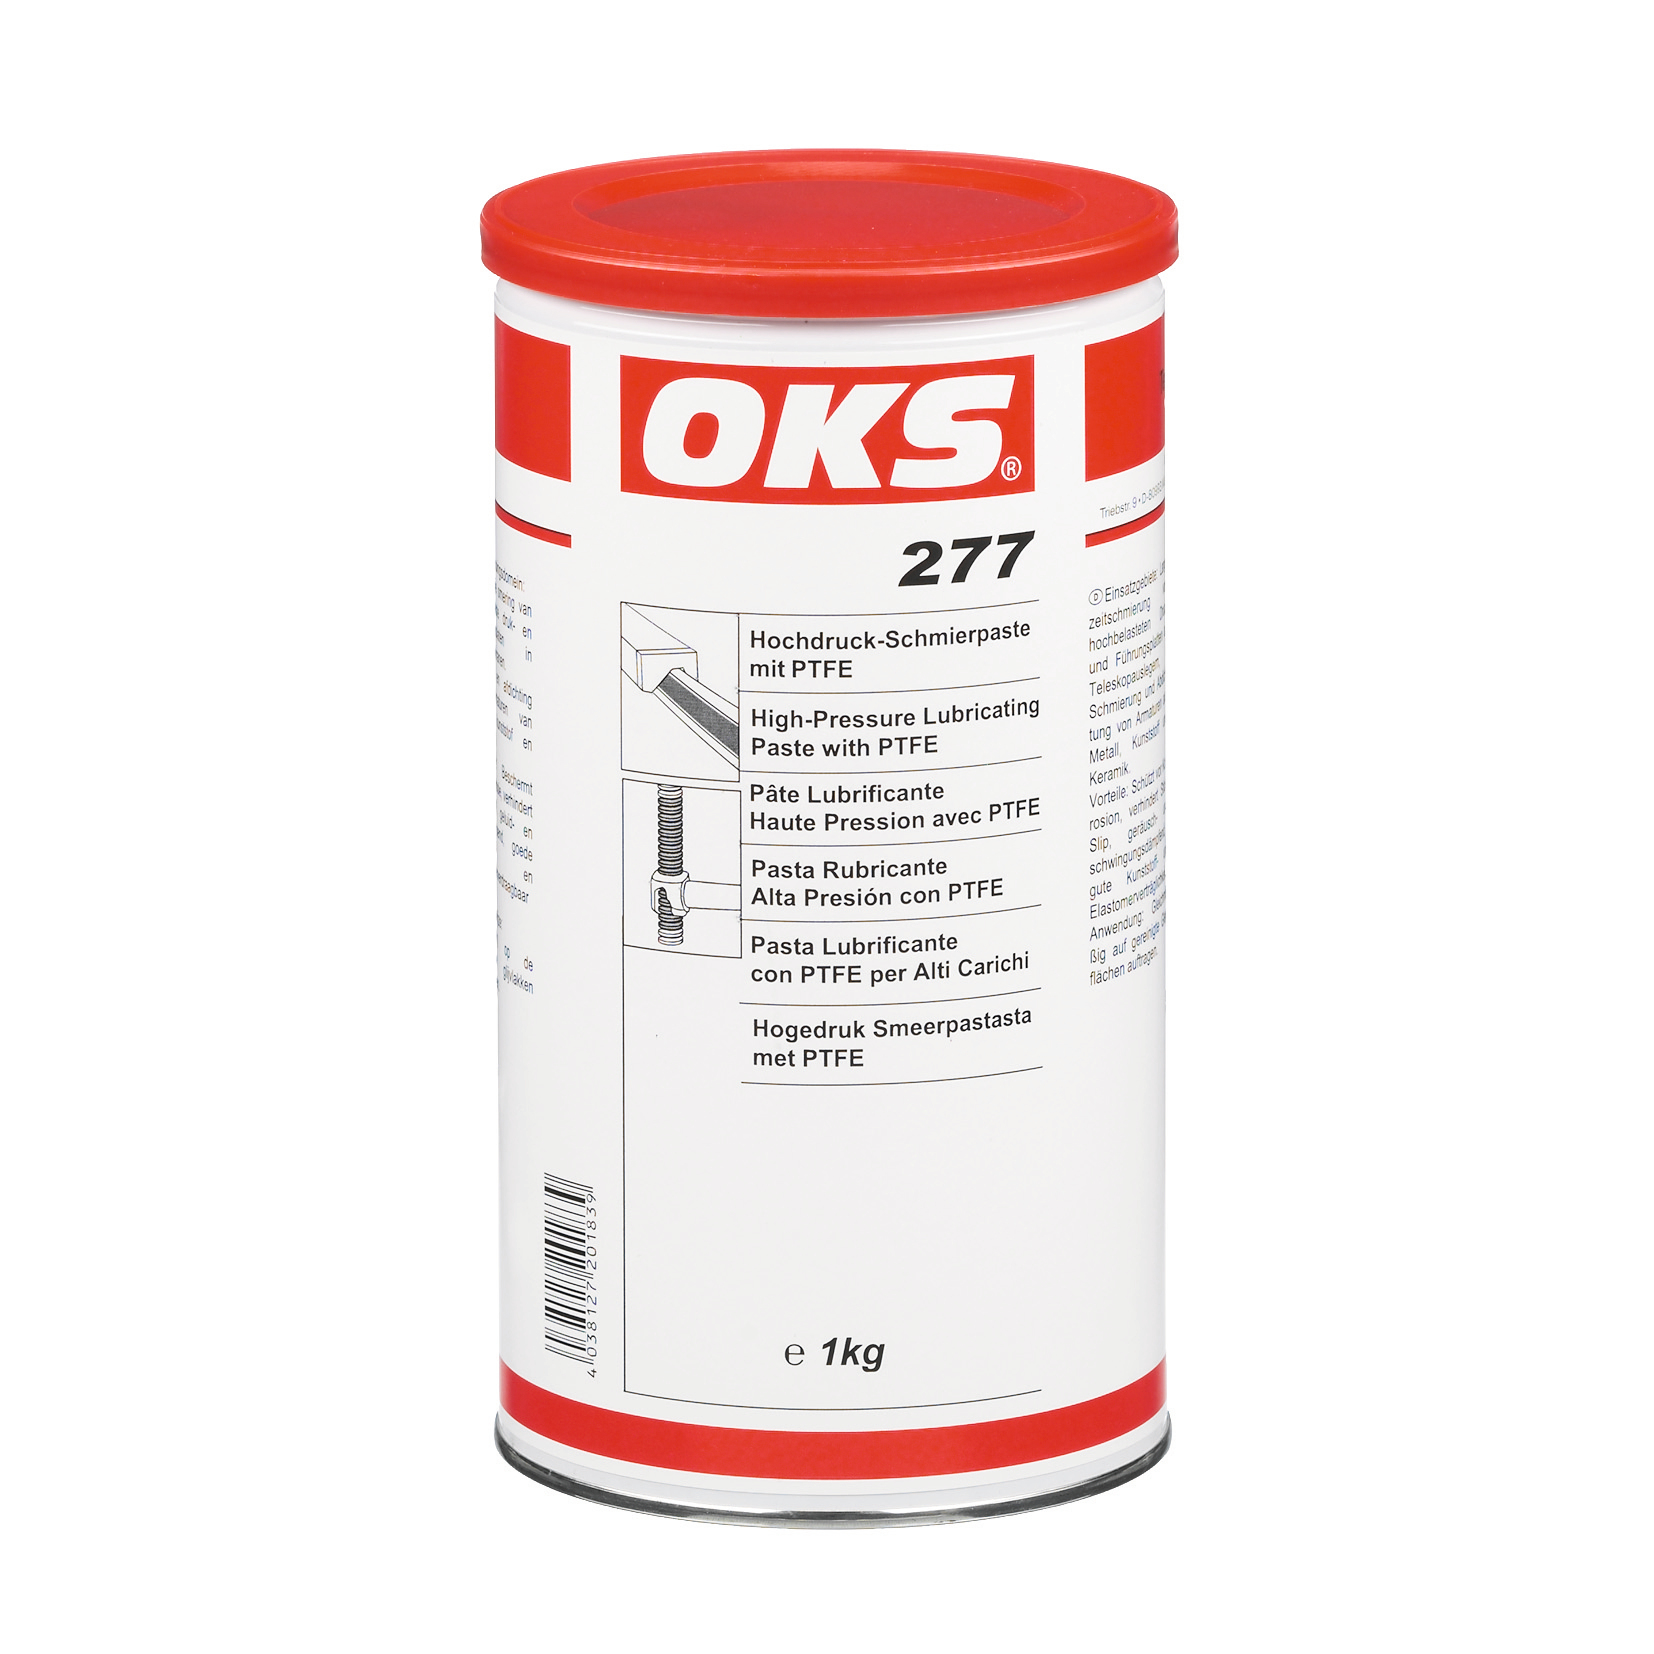 OKS2771-1 Hogedruk-smeerpasta met PTFE voor smering van glijdende machinedelen van metaal, kunststof en keramiek.